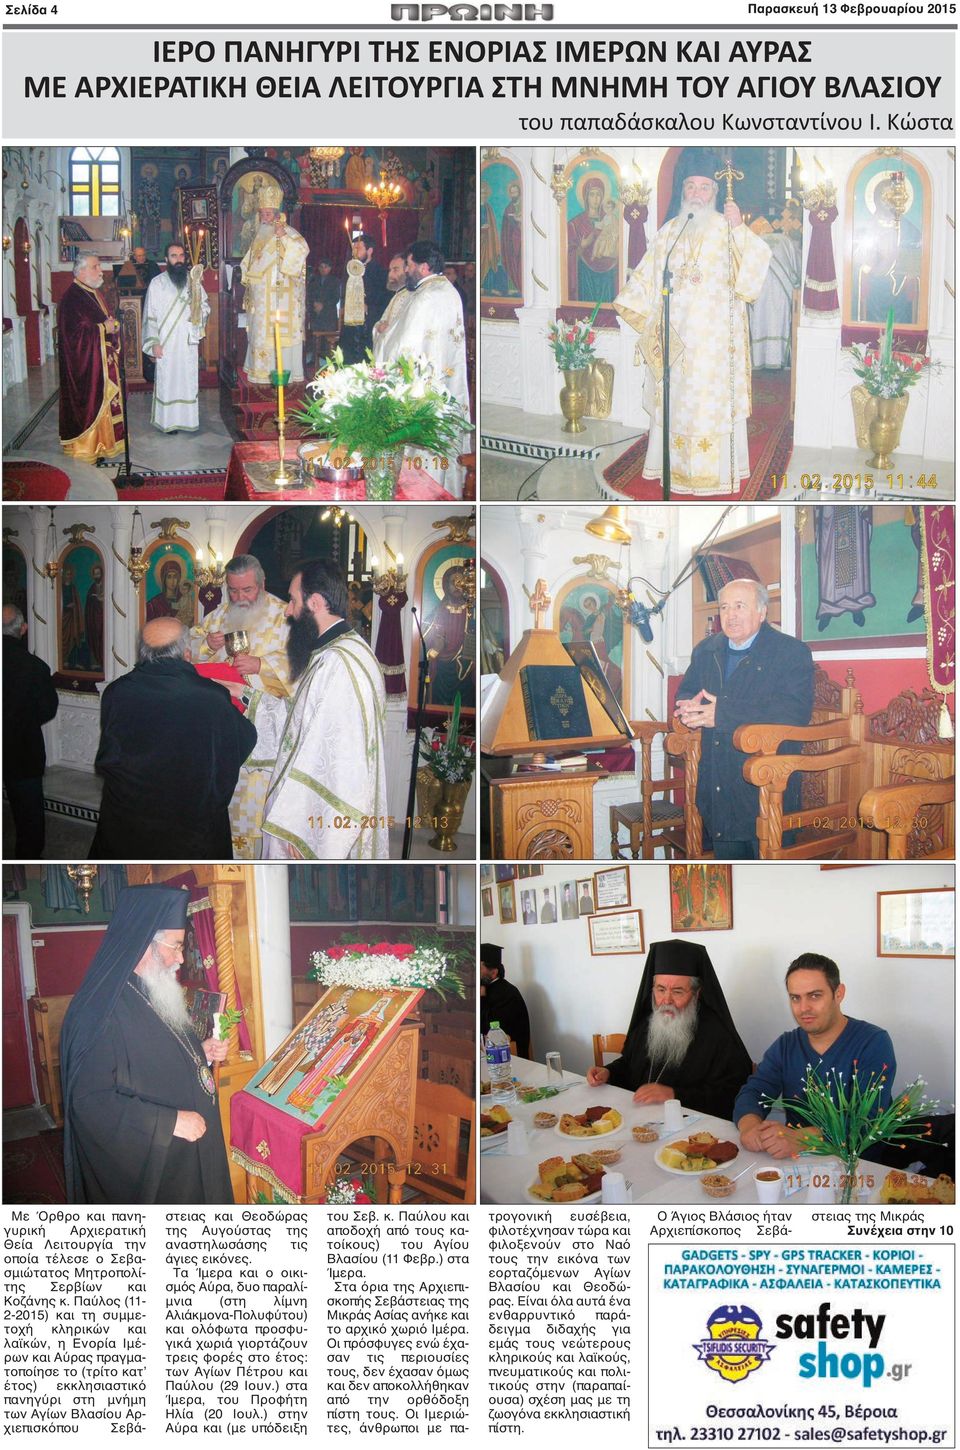 Παύλος (11-2-2015) και τη συμμετοχή κληρικών και λαϊκών, η Ενορία Ιμέρων και Αύρας πραγματοποίησε το (τρίτο κατ έτος) εκκλησιαστικό πανηγύρι στη μνήμη των Αγίων Βλασίου Αρχιεπισκόπου Σεβάστειας και